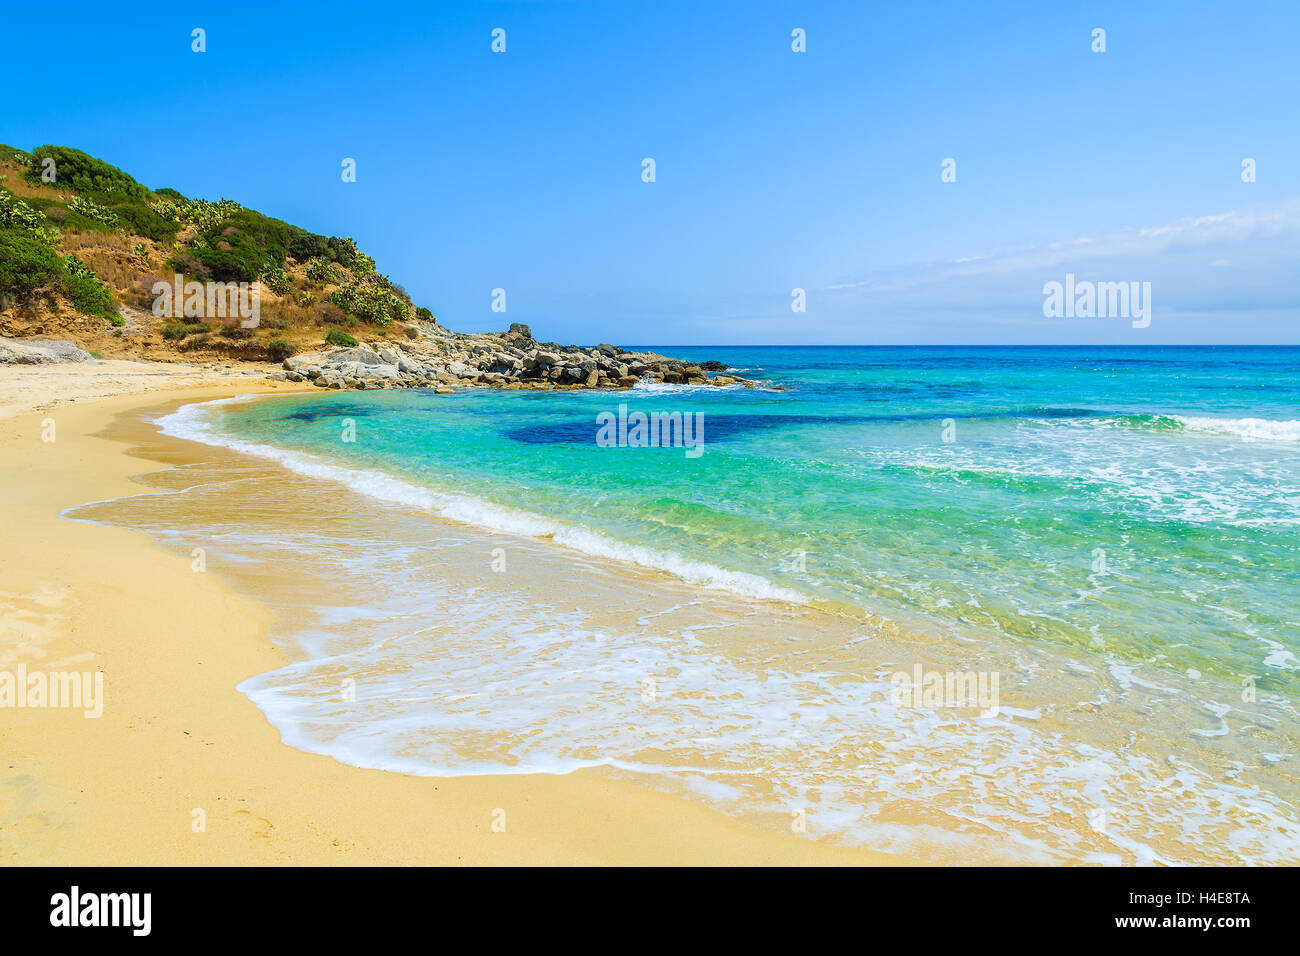 L'eau cristalline de la plage de Cala Sinzias, Sardaigne, île, Italie Banque D'Images